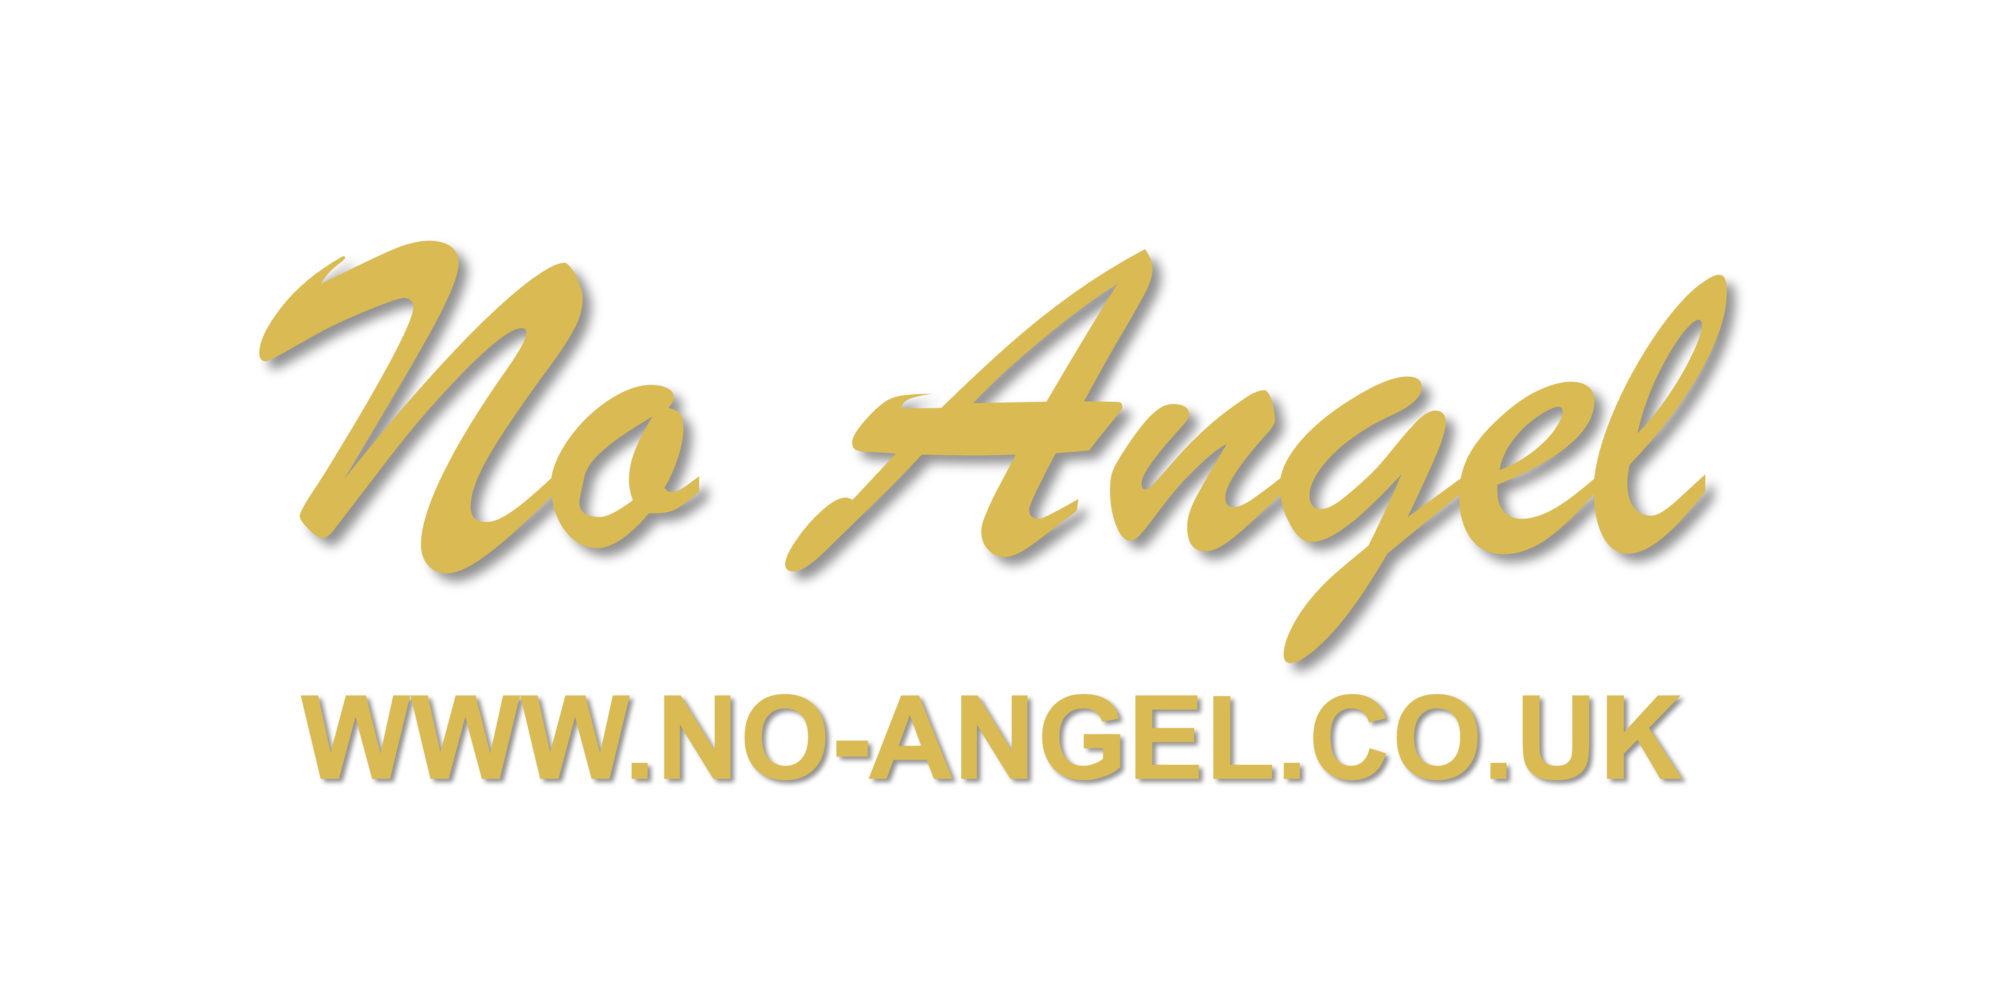 Wo ugel WWW.NO-ANGEL.CO.UK 